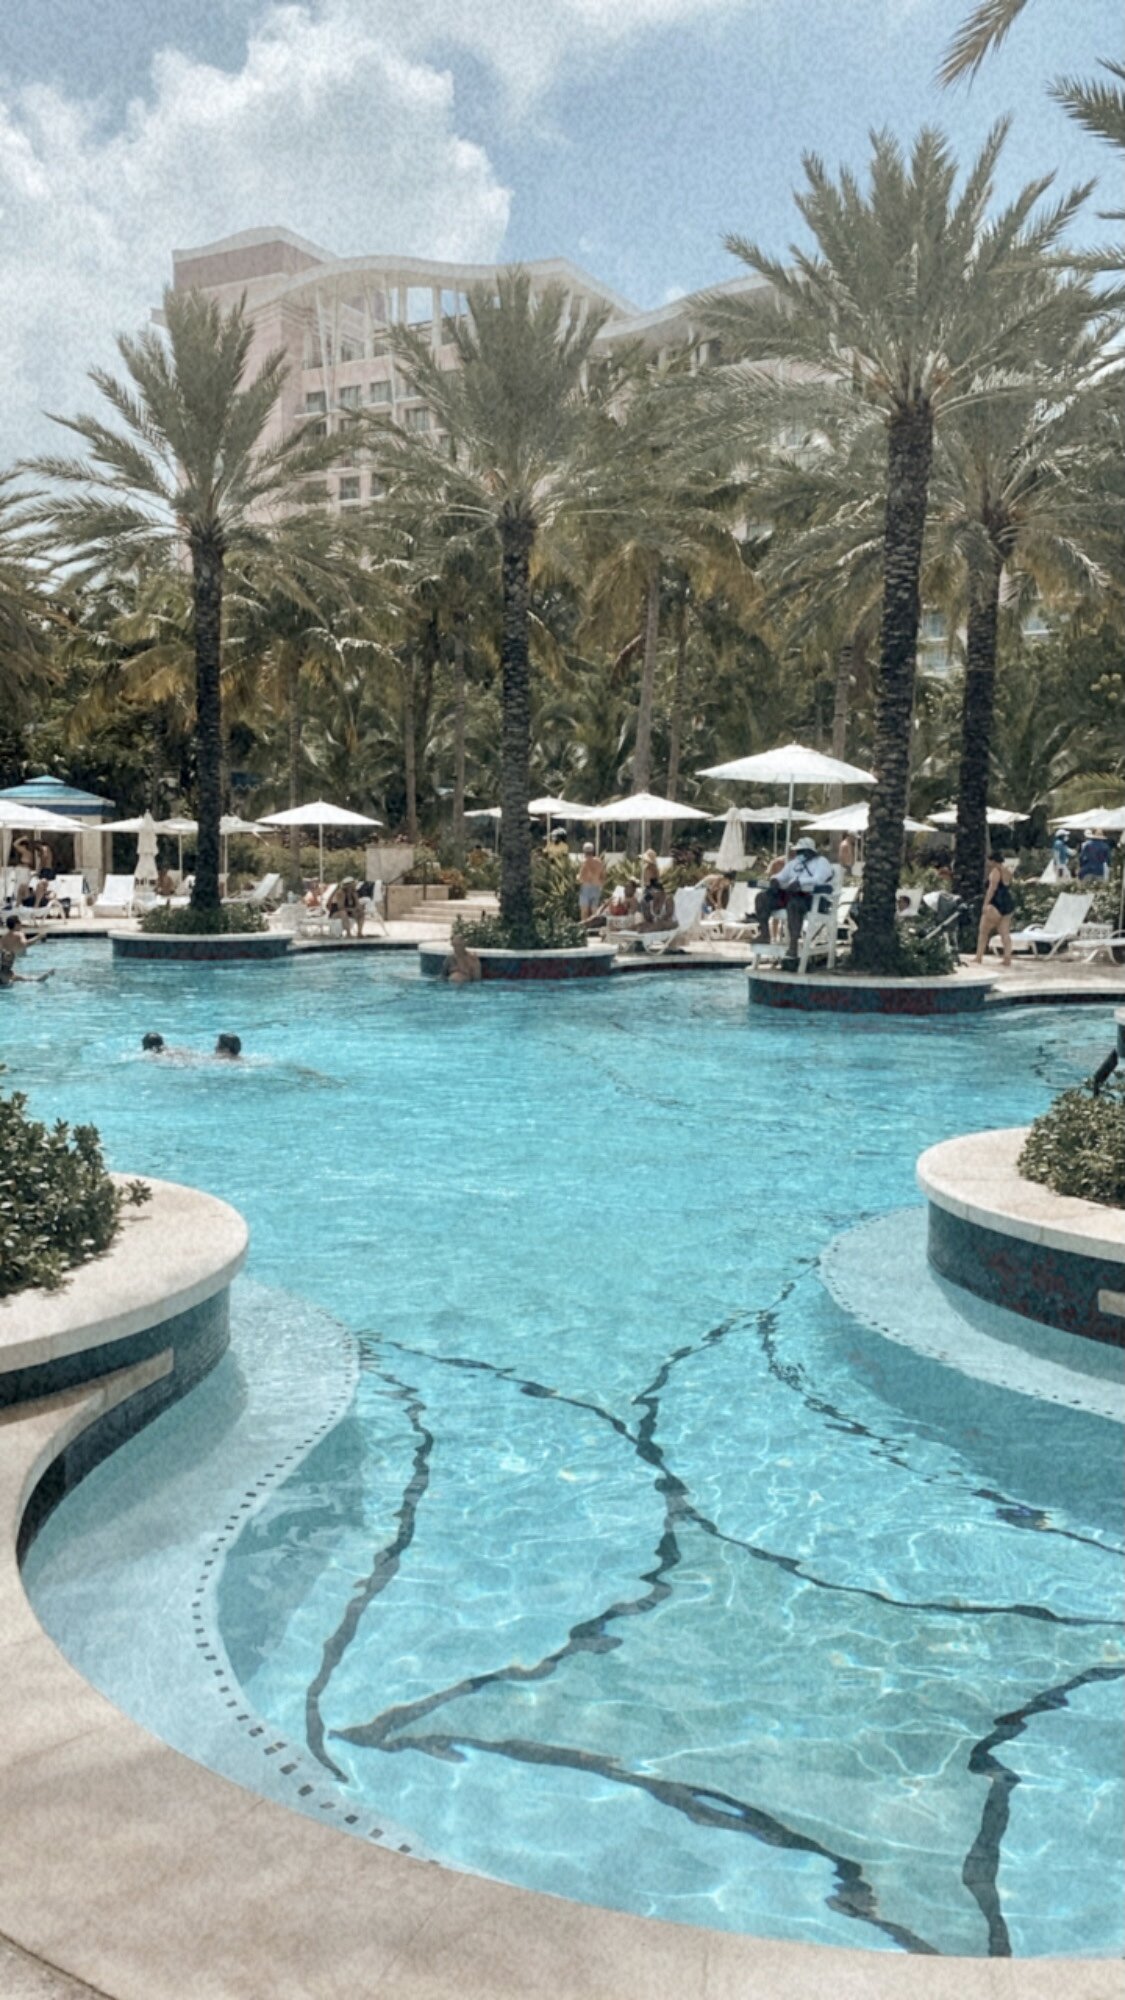 Baha-mar-resort-pool-fortune-h20.jpg